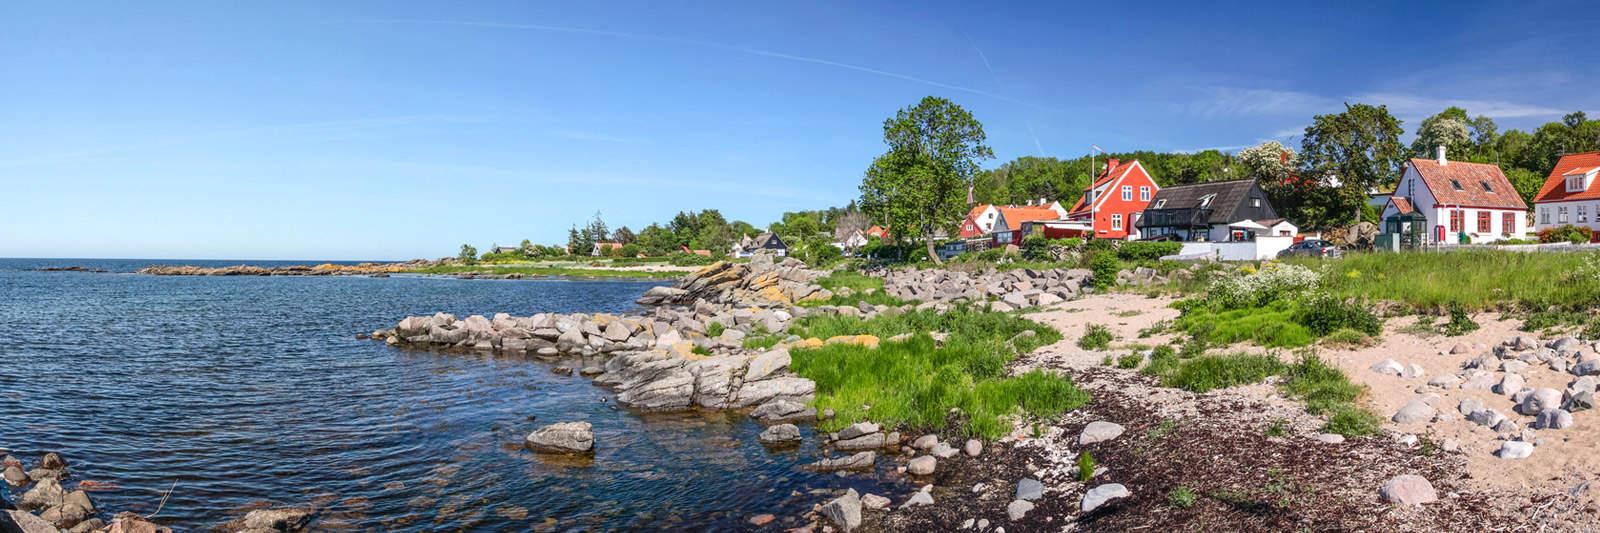 30 Ferienwohnungen und Ferienhäuser in Nyborg - tourist-online.de